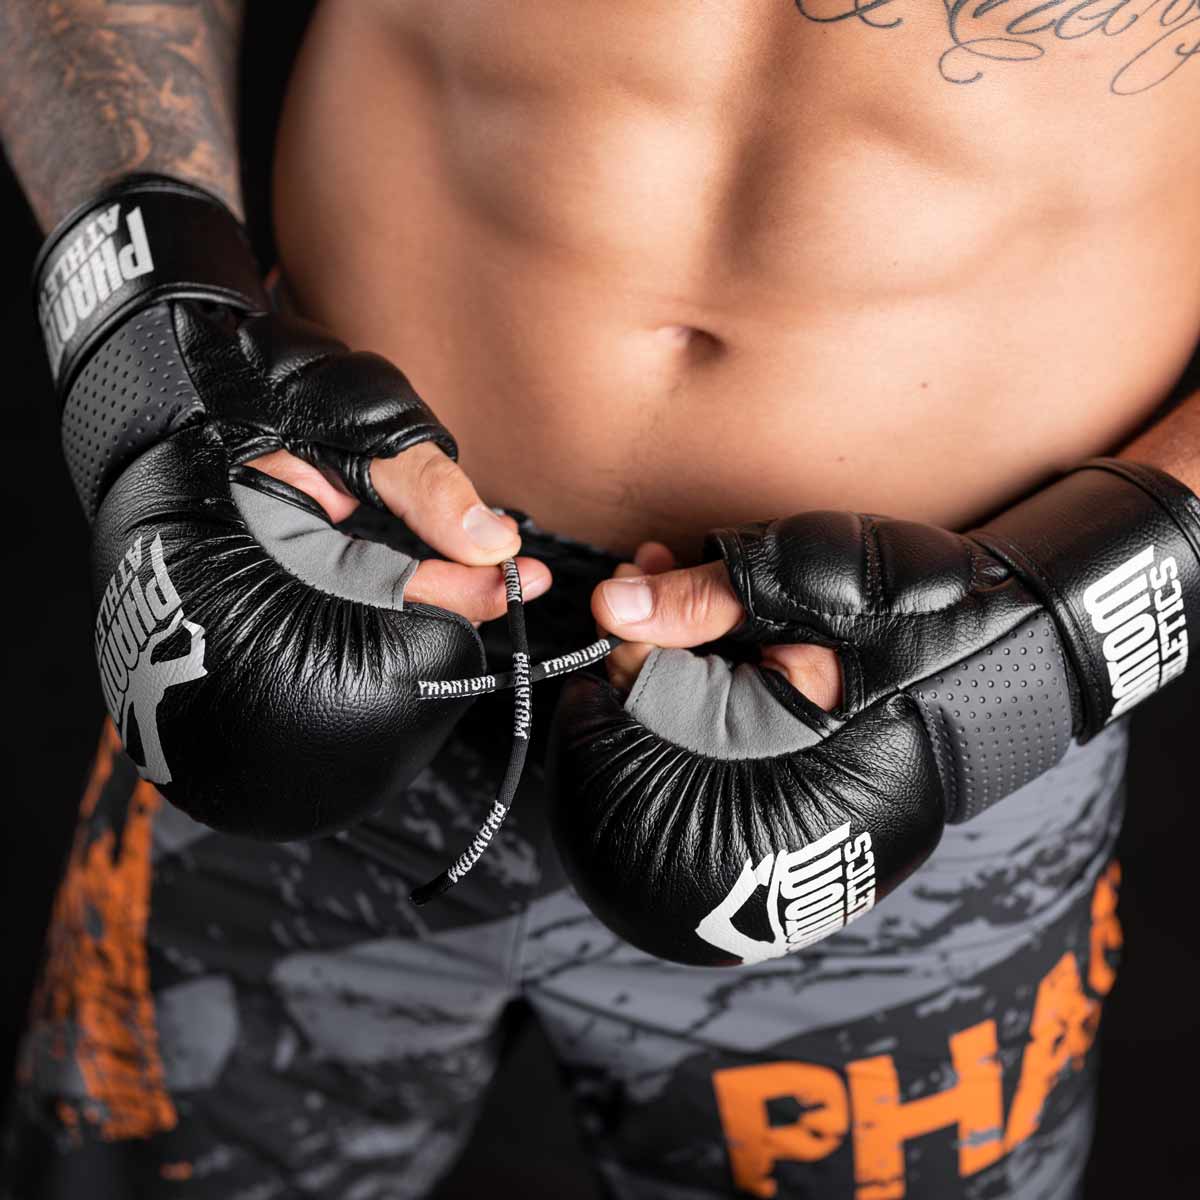 Die Phantom FLEX Fightshorts zählen zu den besten Fightshorts am Markt. Ultraleicht, mega flexibel und reißfest. Reduziert auf ein absolutes Minimum bietet sie dir maximale Performance in deinem Kampfsport. Egal ob BJJ, MMA, Muay Thai oder Kickboxen. Die FLEX Shorts von Phantom Athletics holen das beste aus dir raus. Hier im orangen Splatter Design.